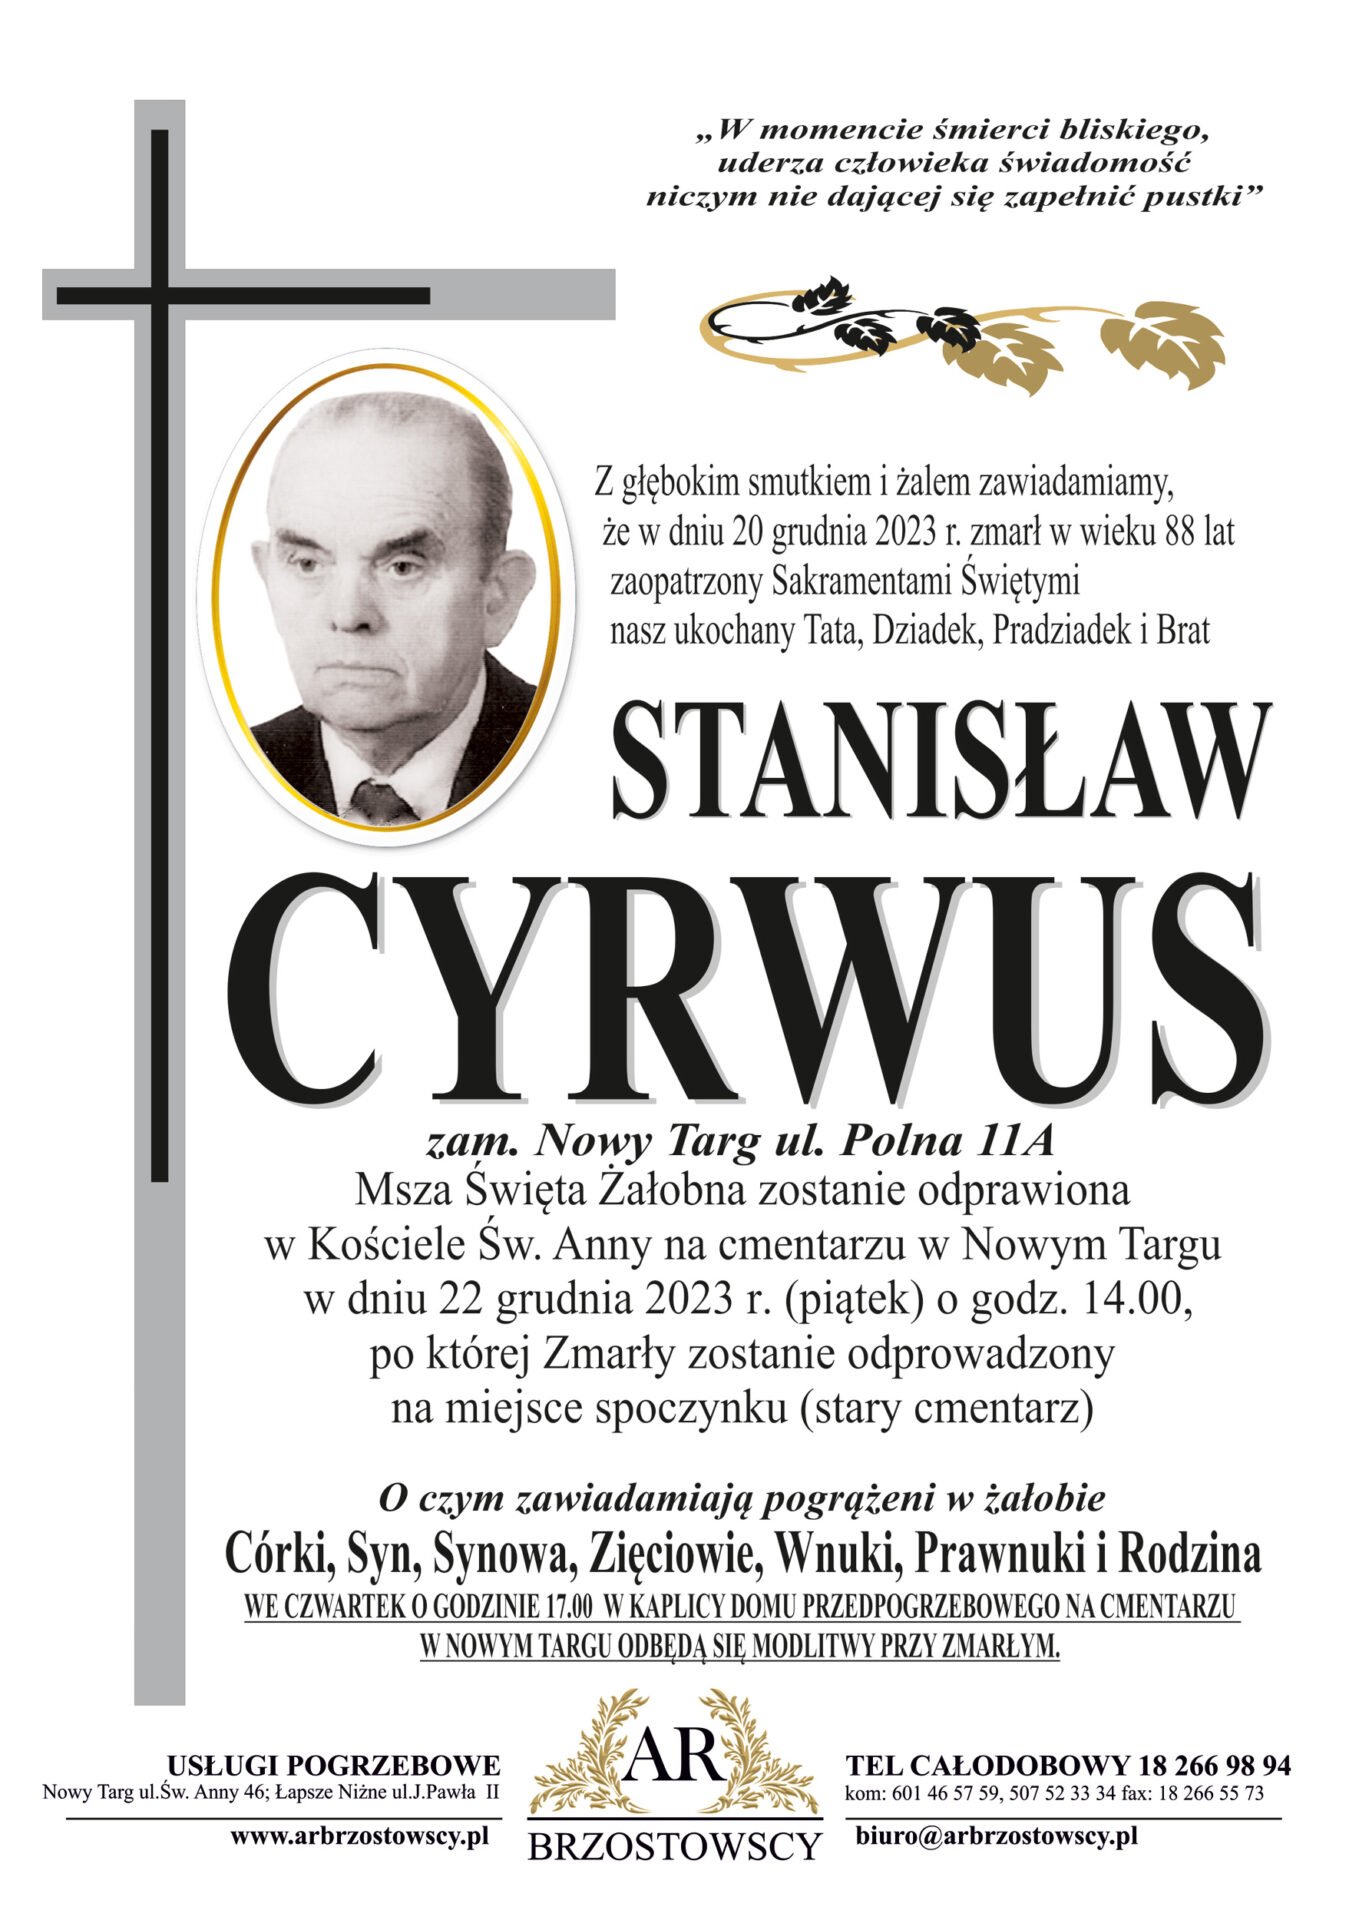 Stanisław Cyrwus